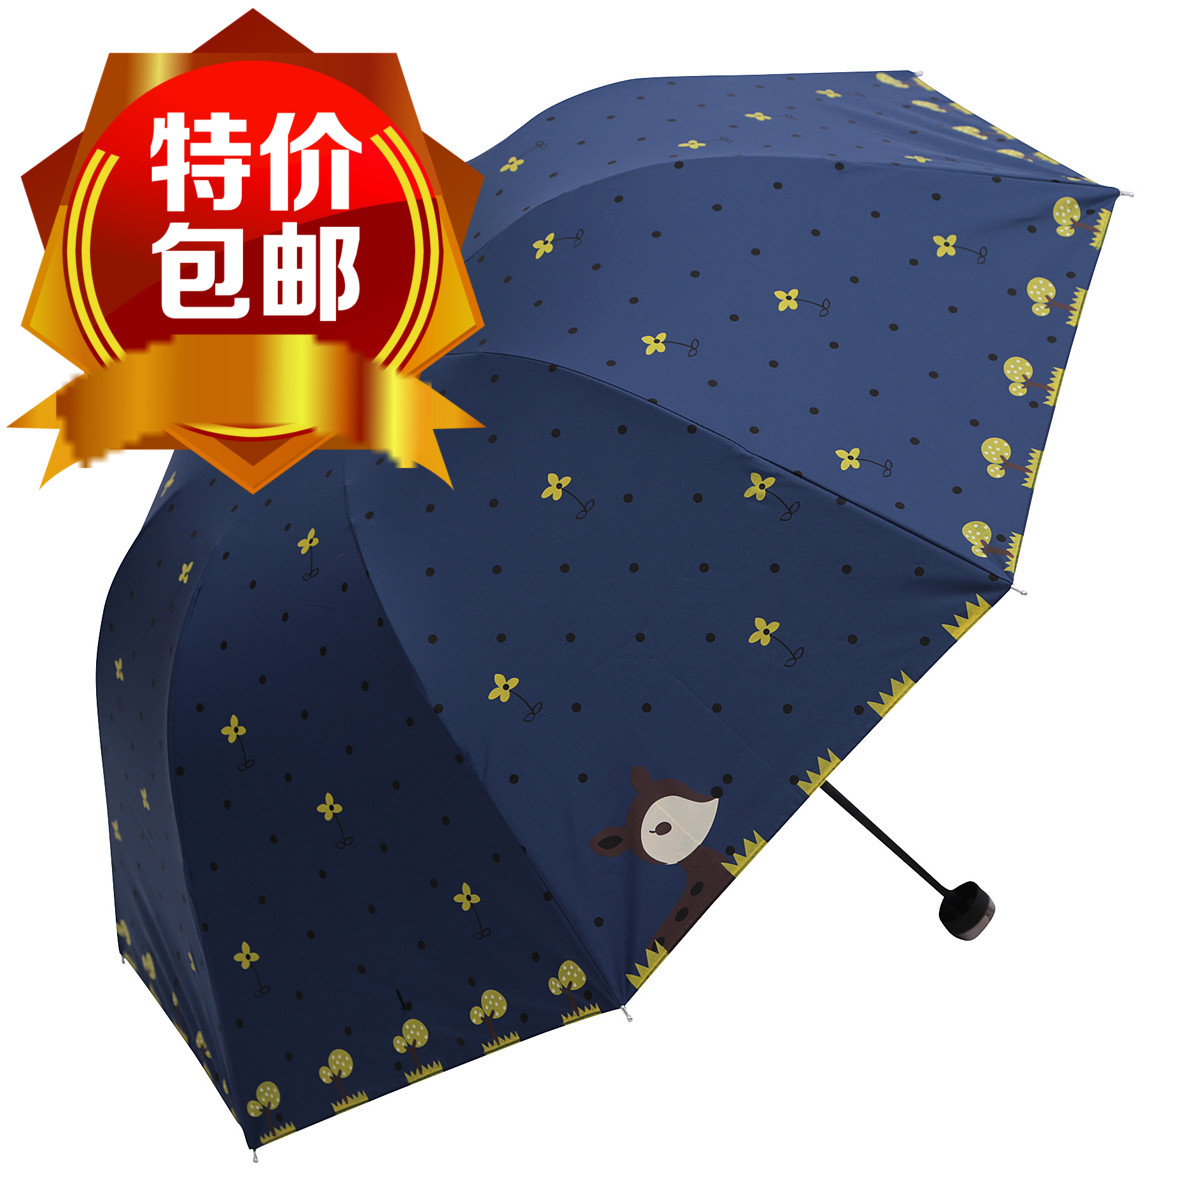 天使创意三折叠卡通小鹿黑胶太阳伞防紫外线女士防晒遮阳伞晴雨伞